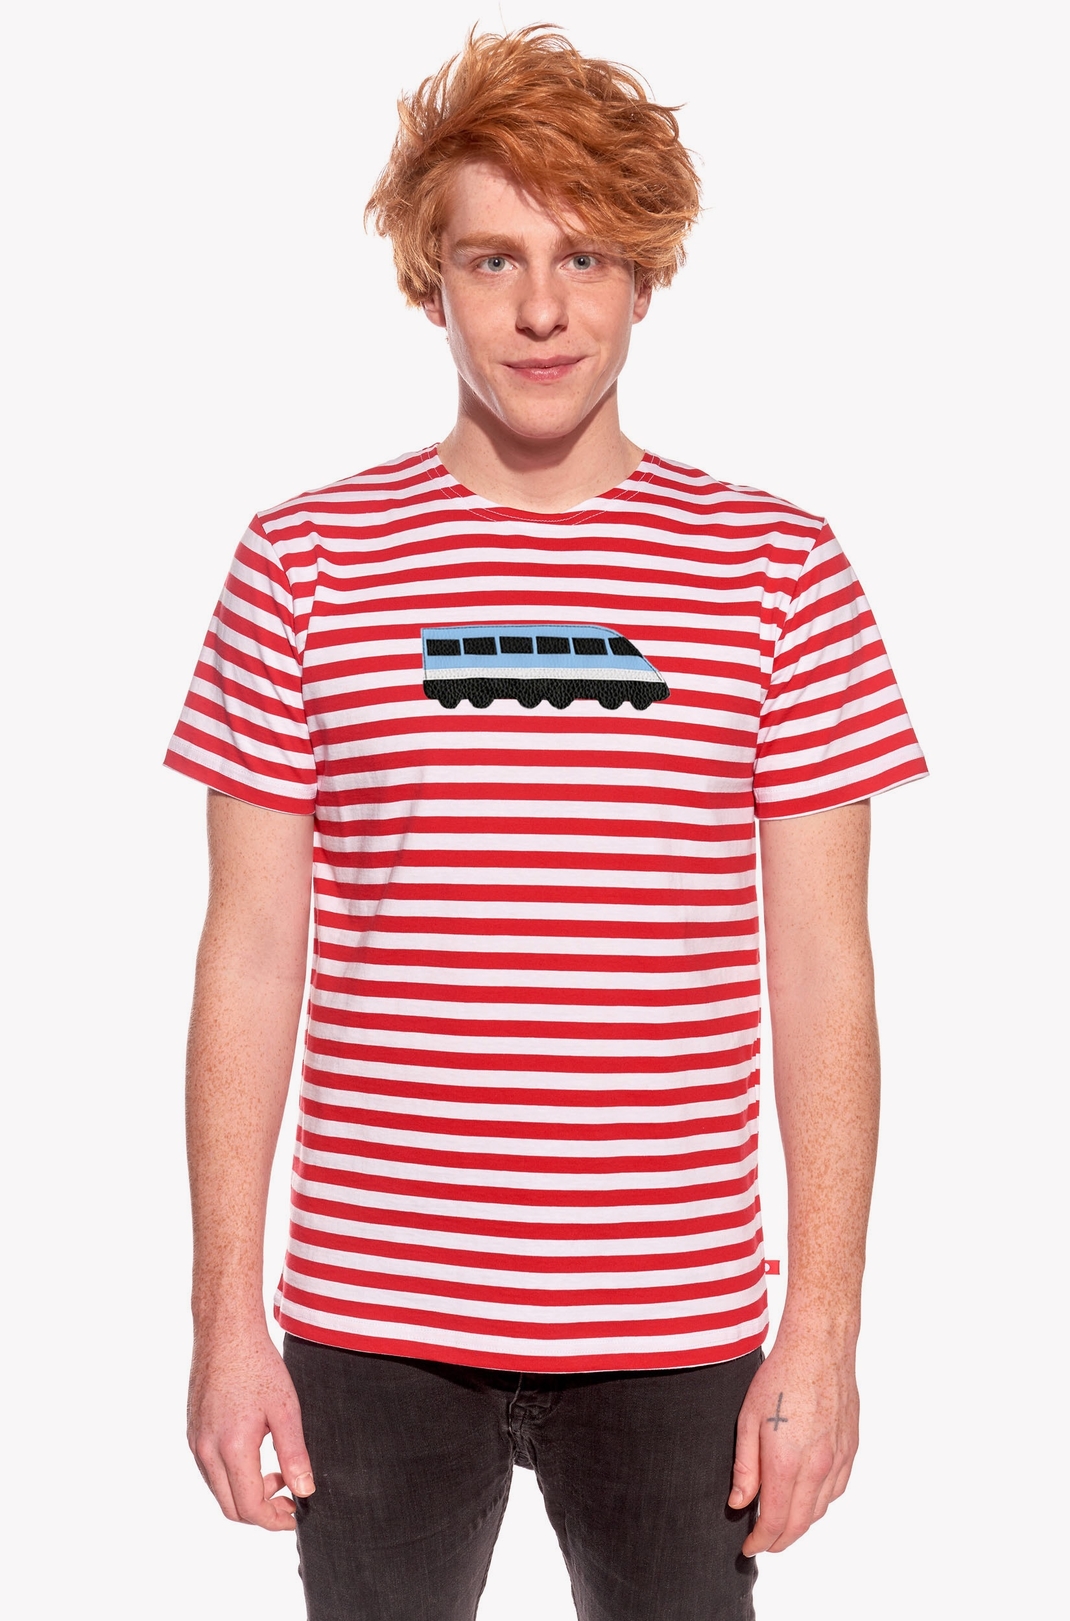 Pólók vonattal